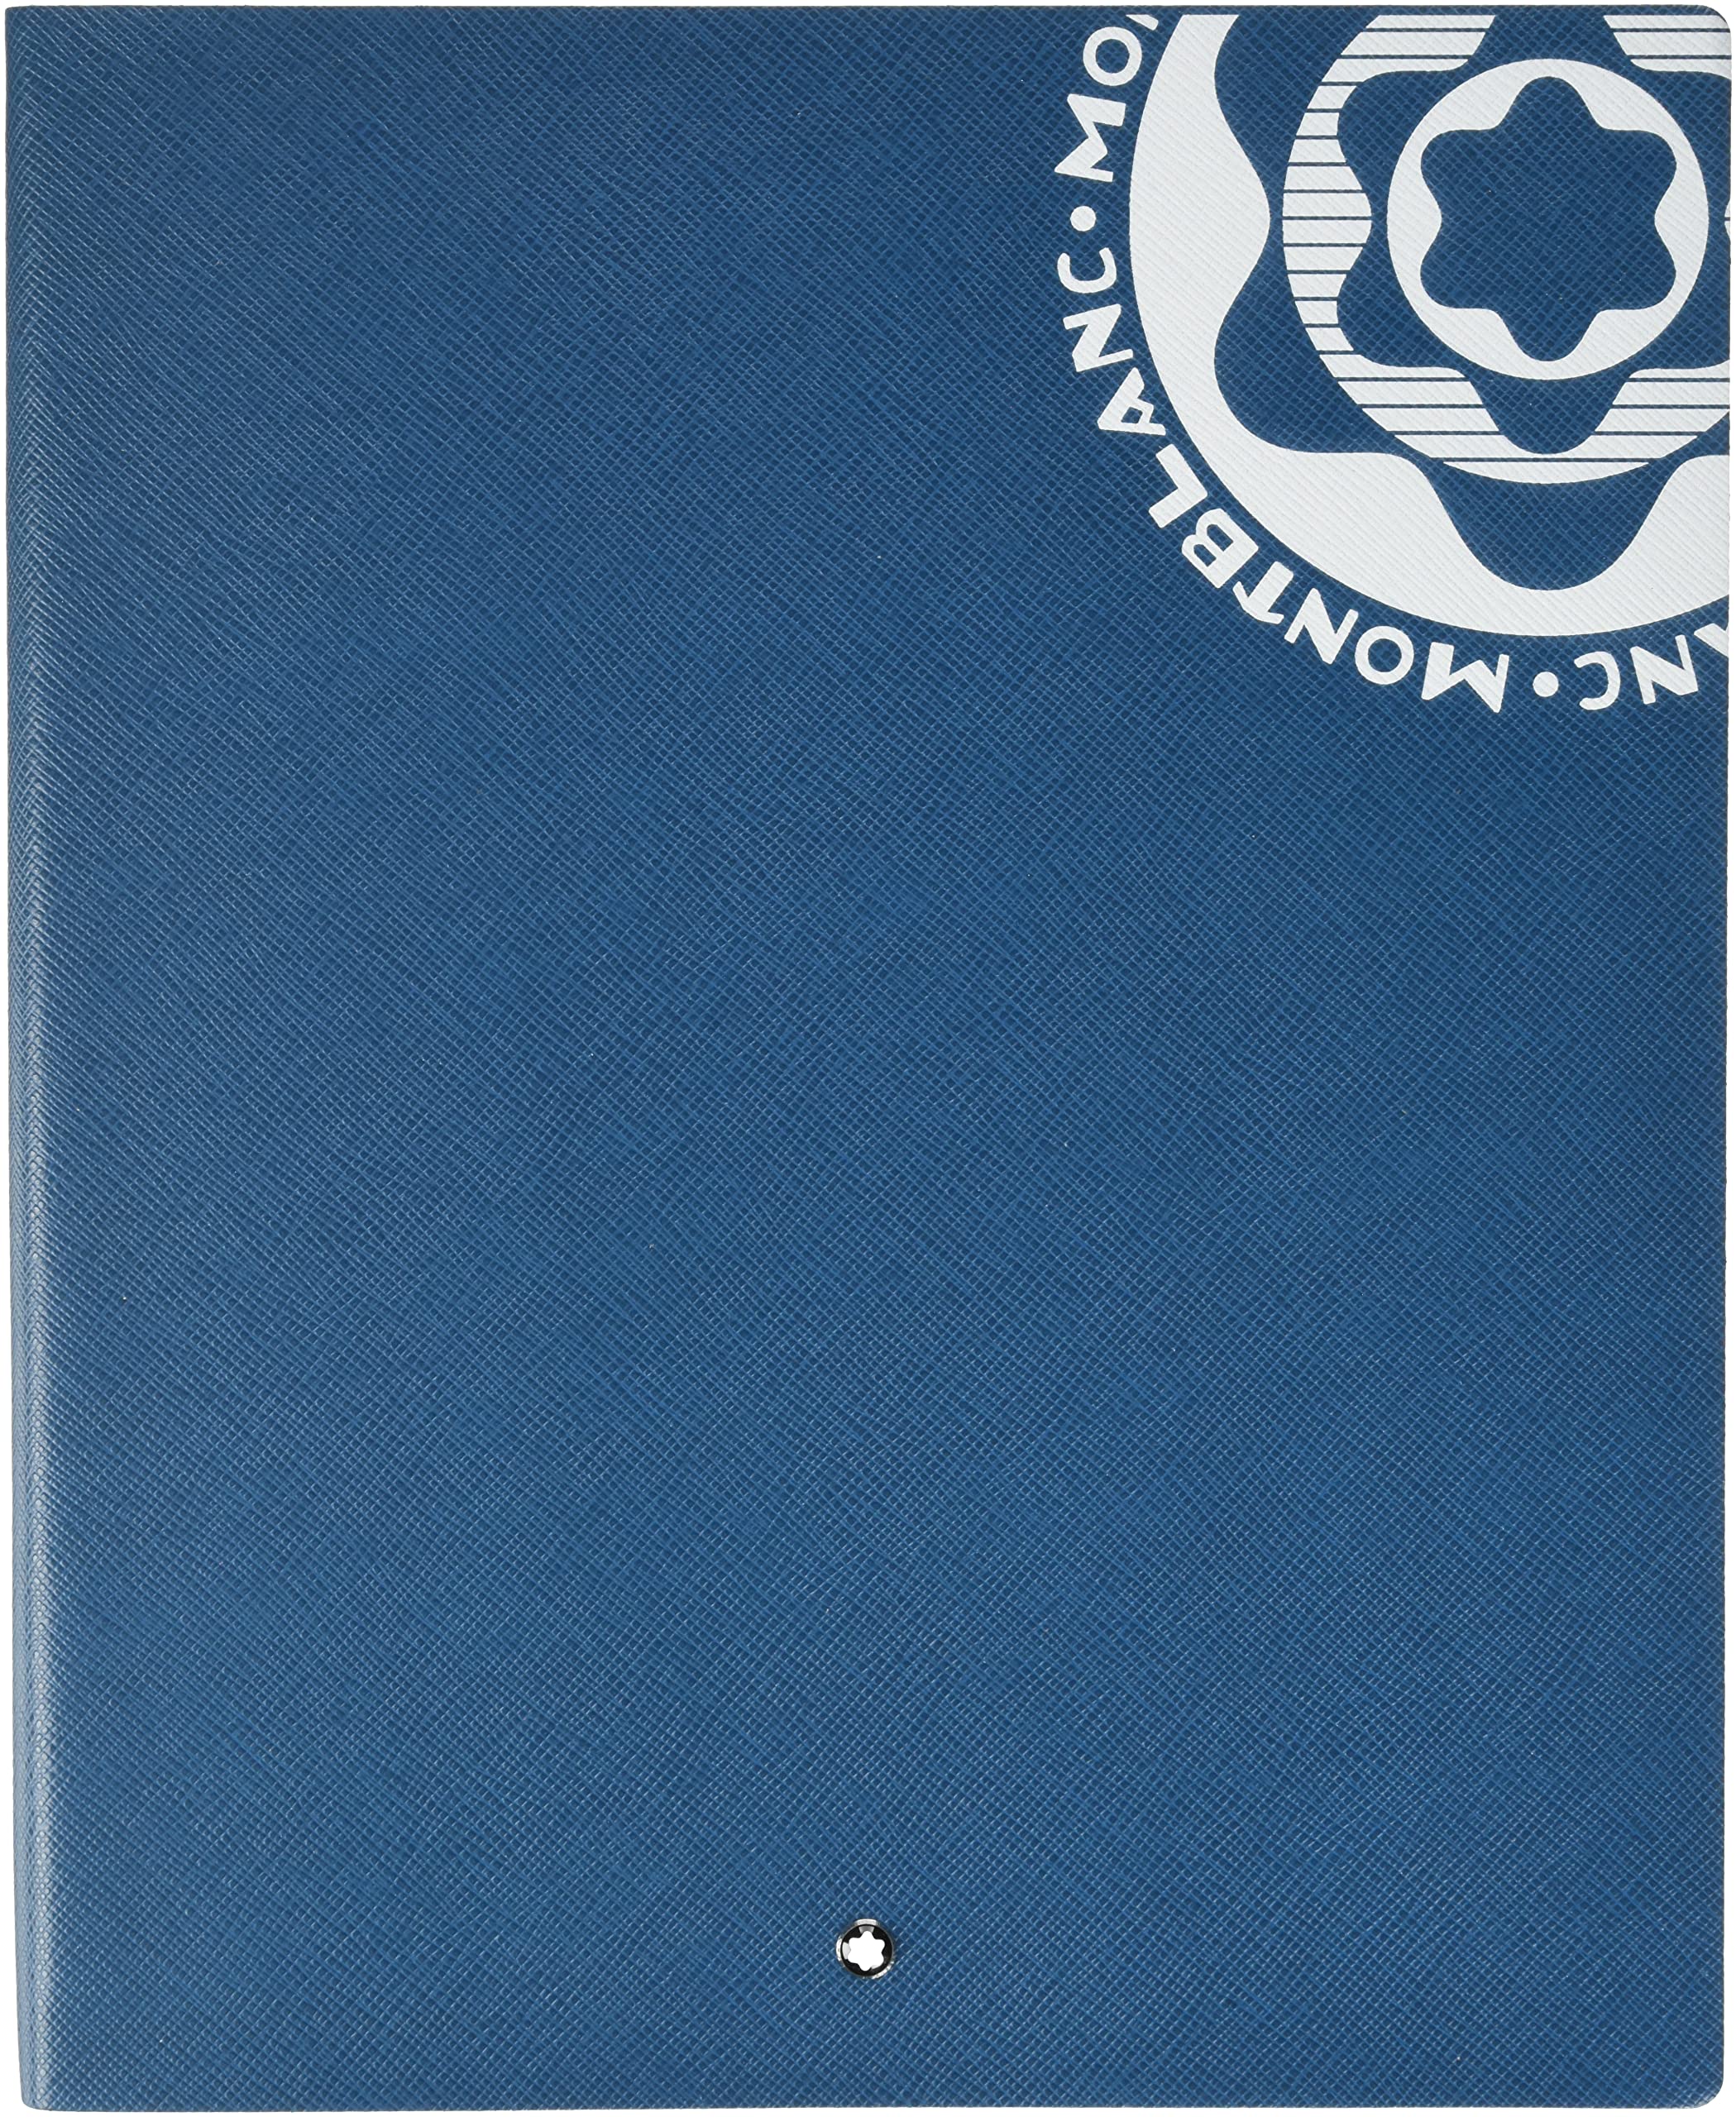 Montblanc Hommage to Vintage Logo Notizbuch aus Leder in der Farbe Petrol-Blau 112 Blatt/224 Seiten, Maße: 26cm x 21cm, 129472